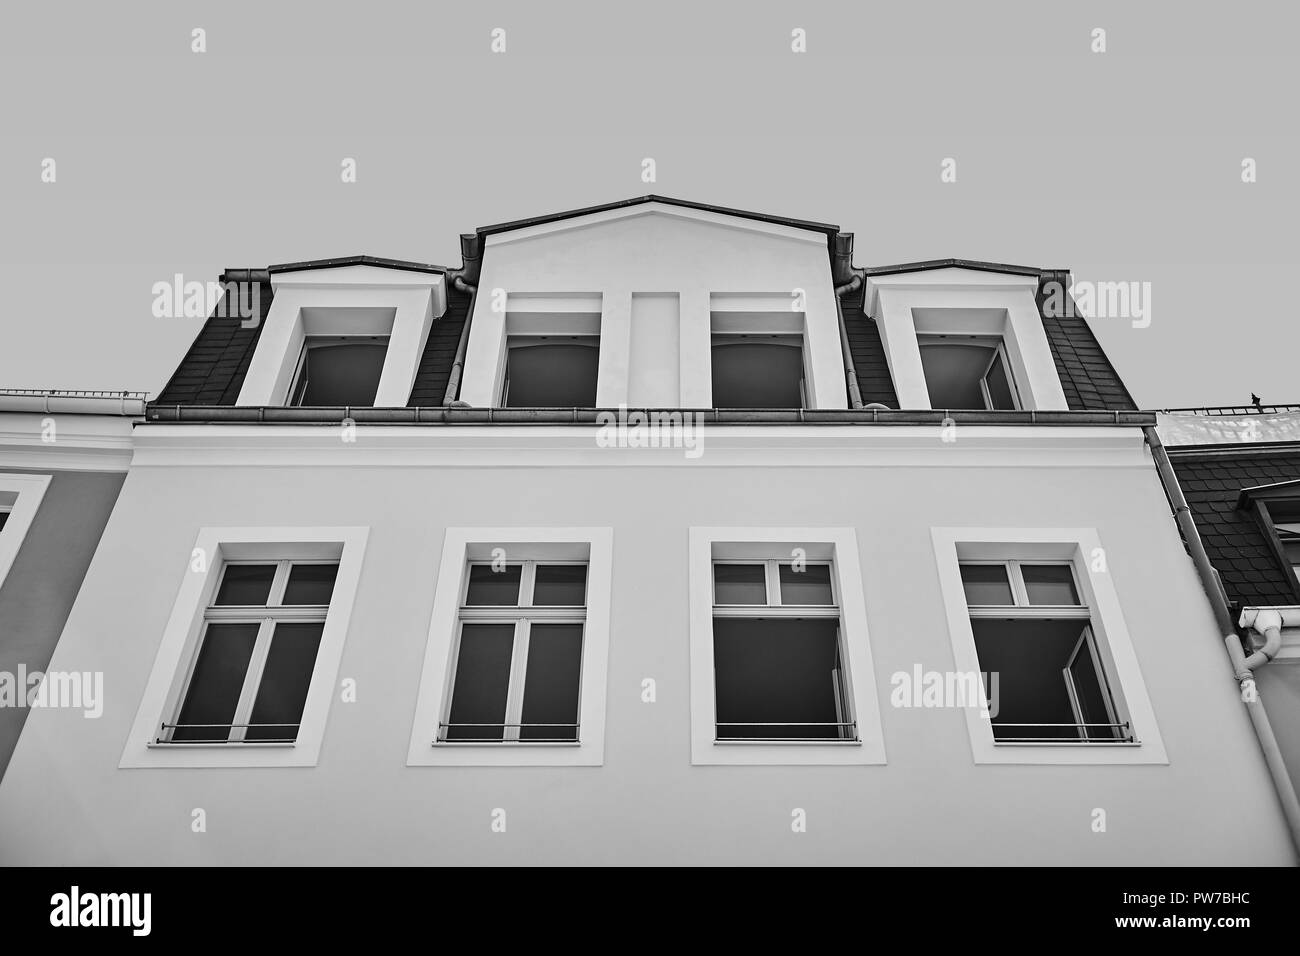 La façade de l'immeuble classique. L'architecture Européenne classique. Le noir et blanc Banque D'Images